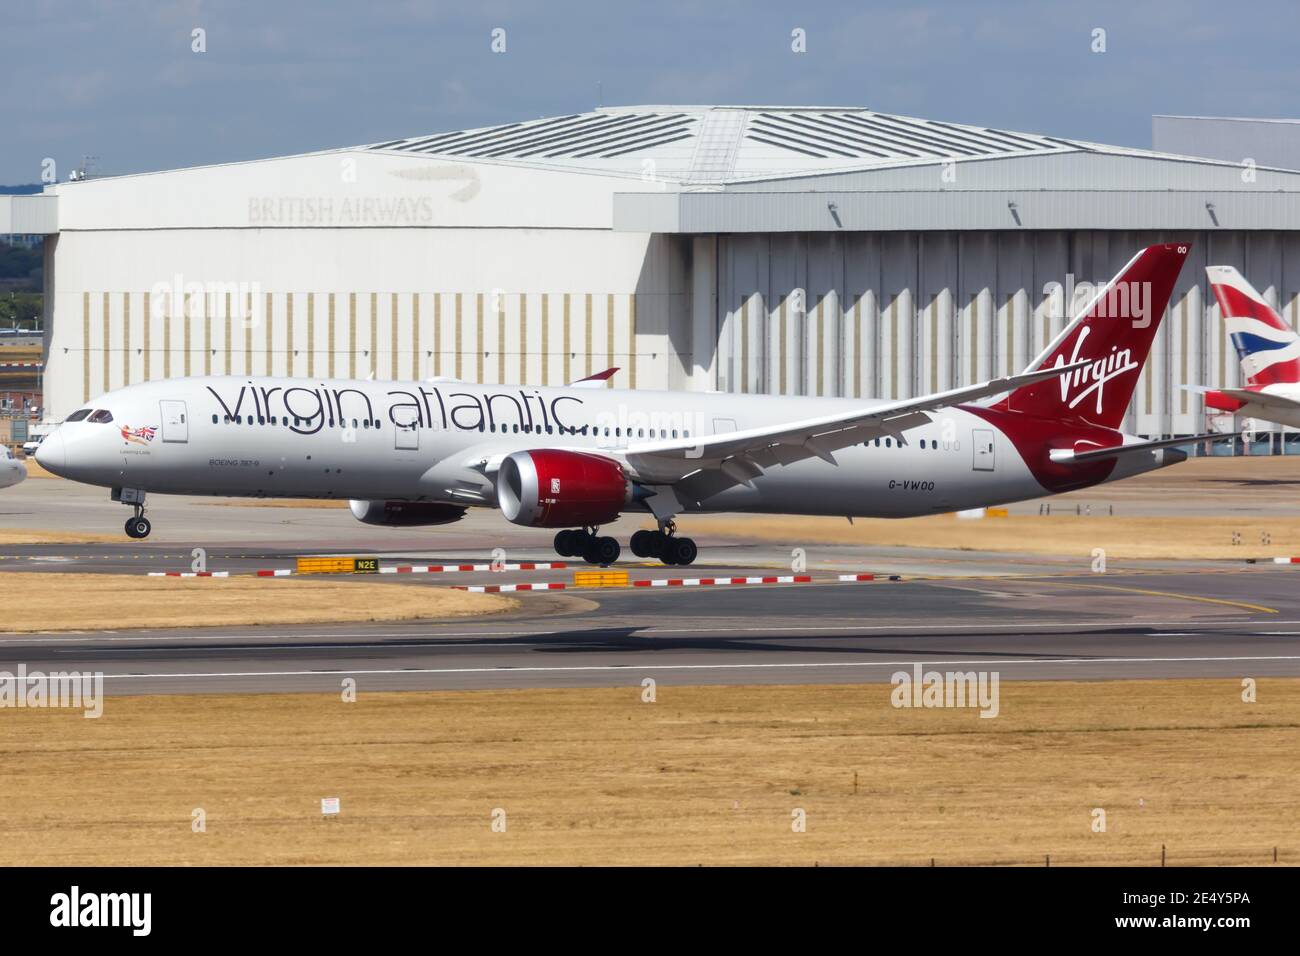 Londres, Royaume-Uni - 31 juillet 2018 : avion Dreamliner Virgin Atlantic Boeing 787 à l'aéroport de Londres Heathrow (LHR) au Royaume-Uni. Banque D'Images